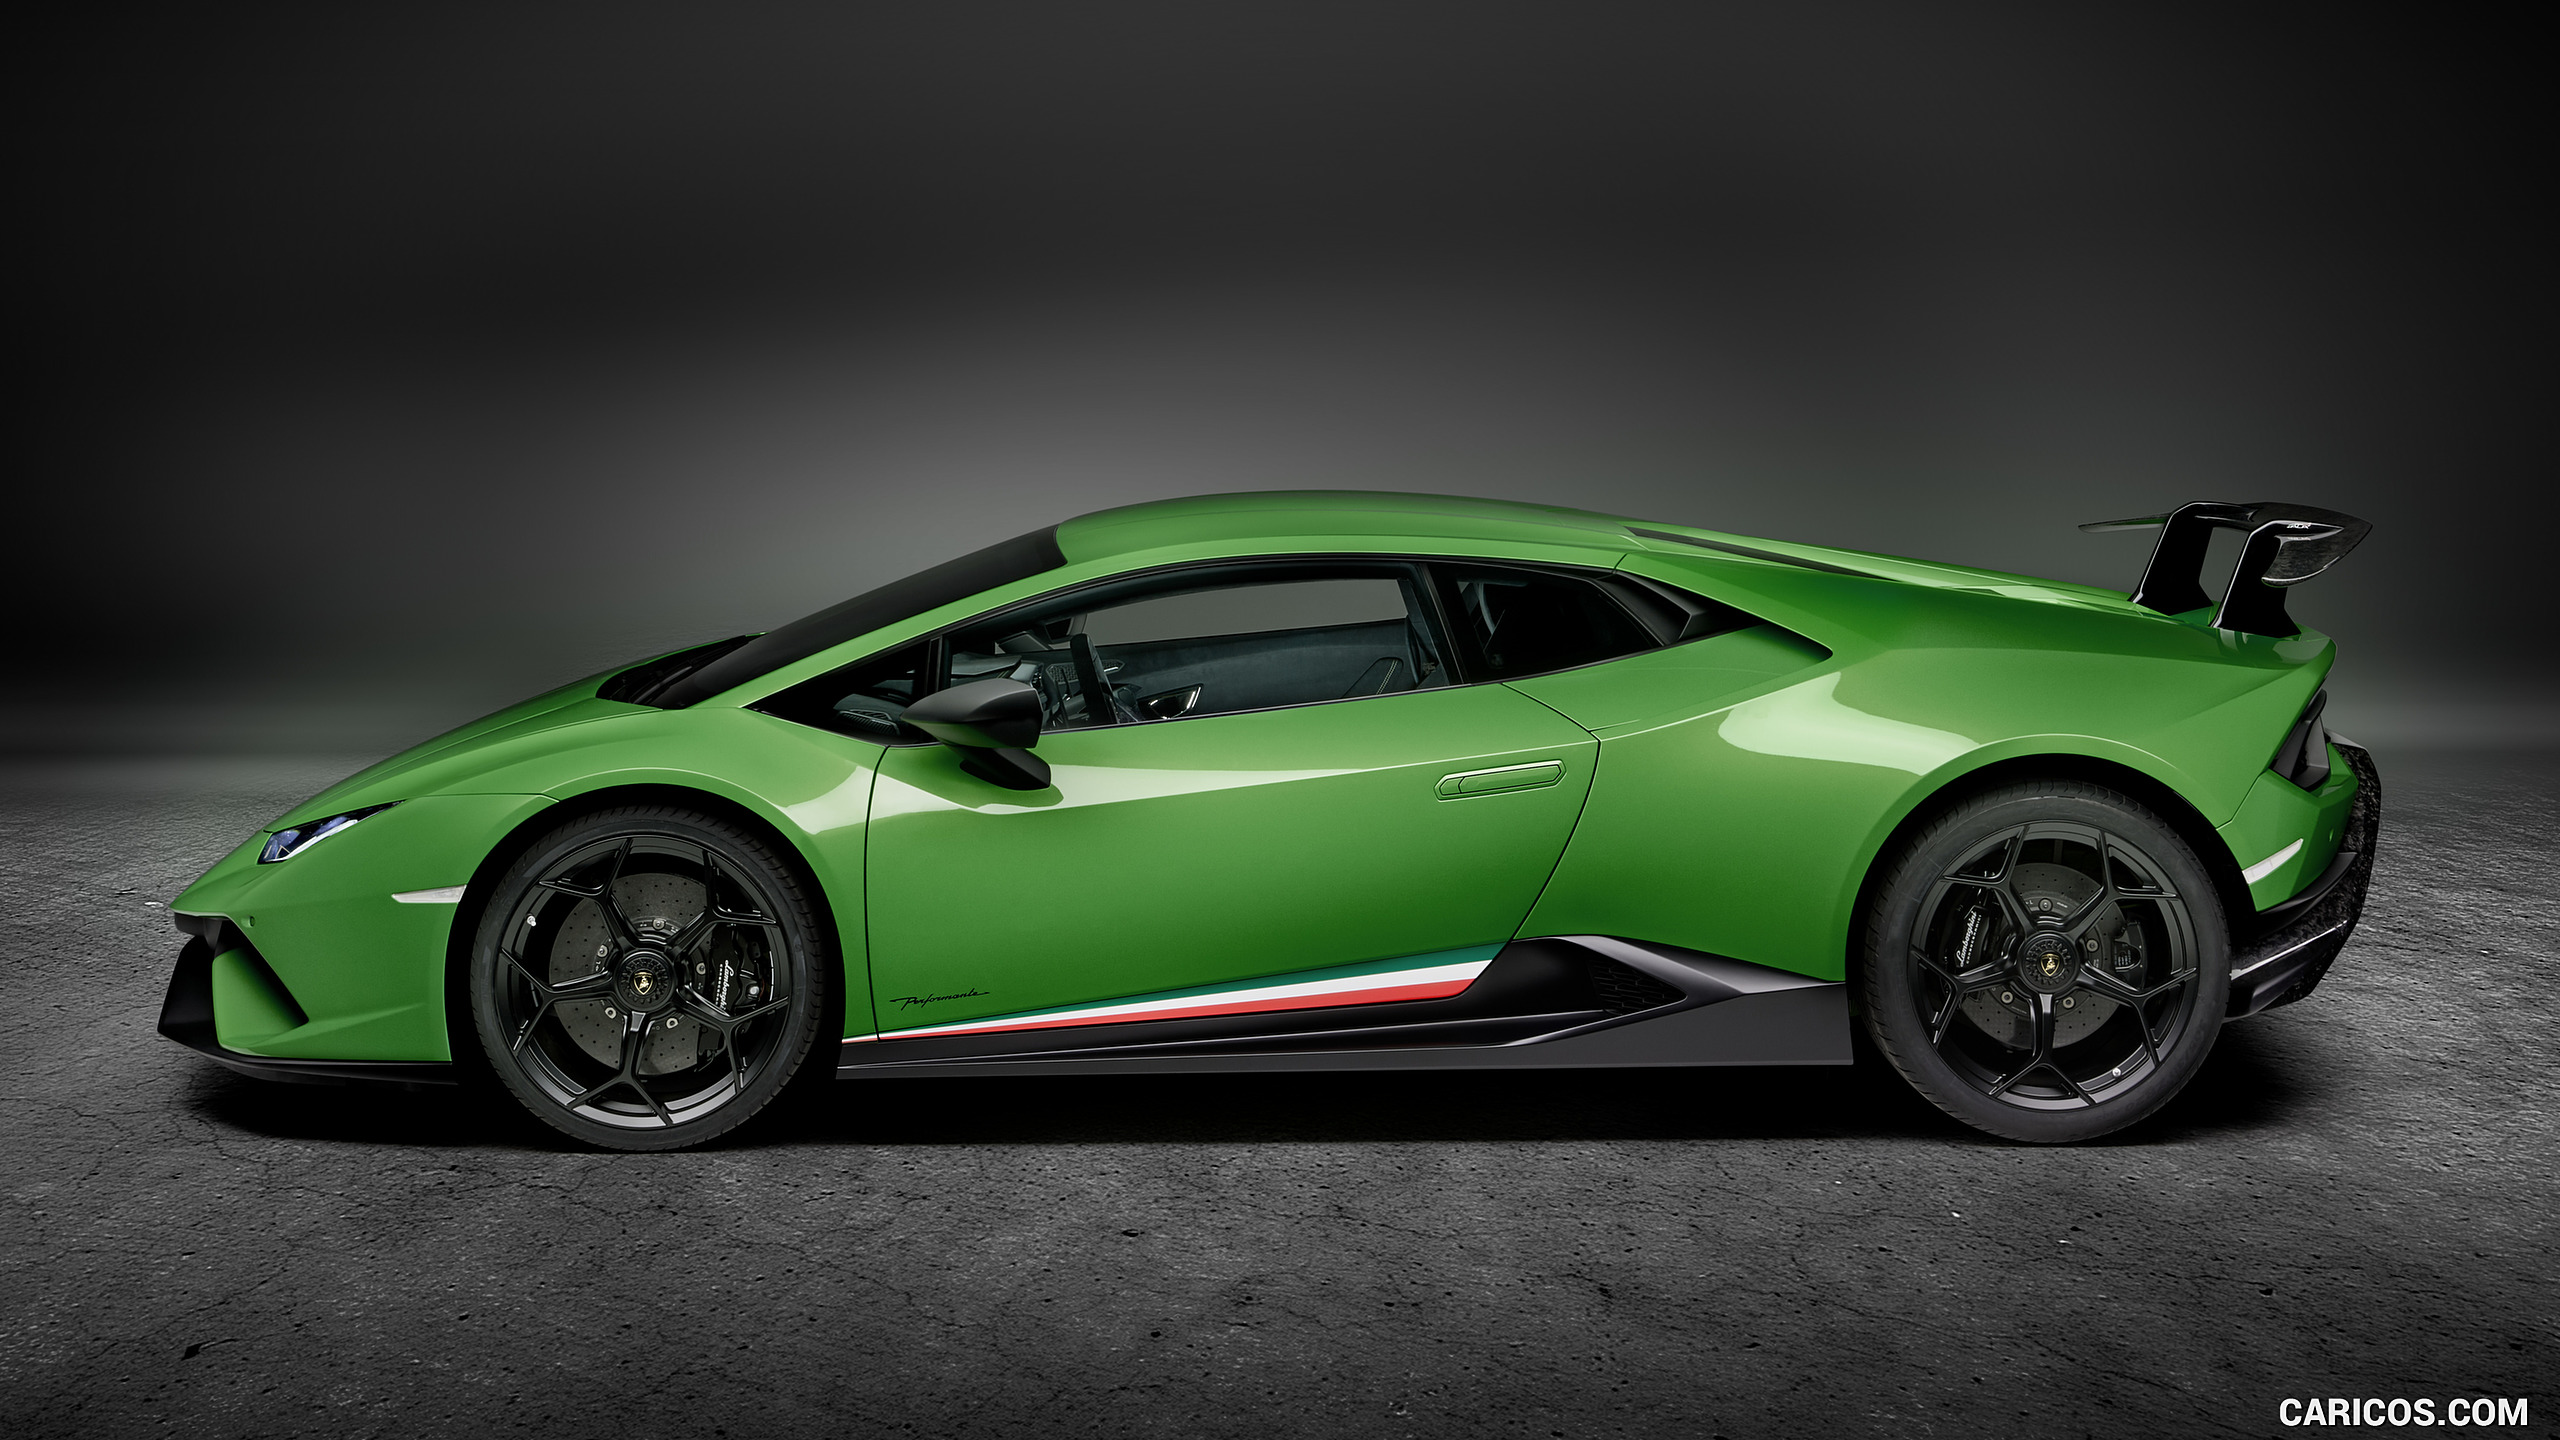 2018 Lamborghini Wallpapers - WallpaperSafari